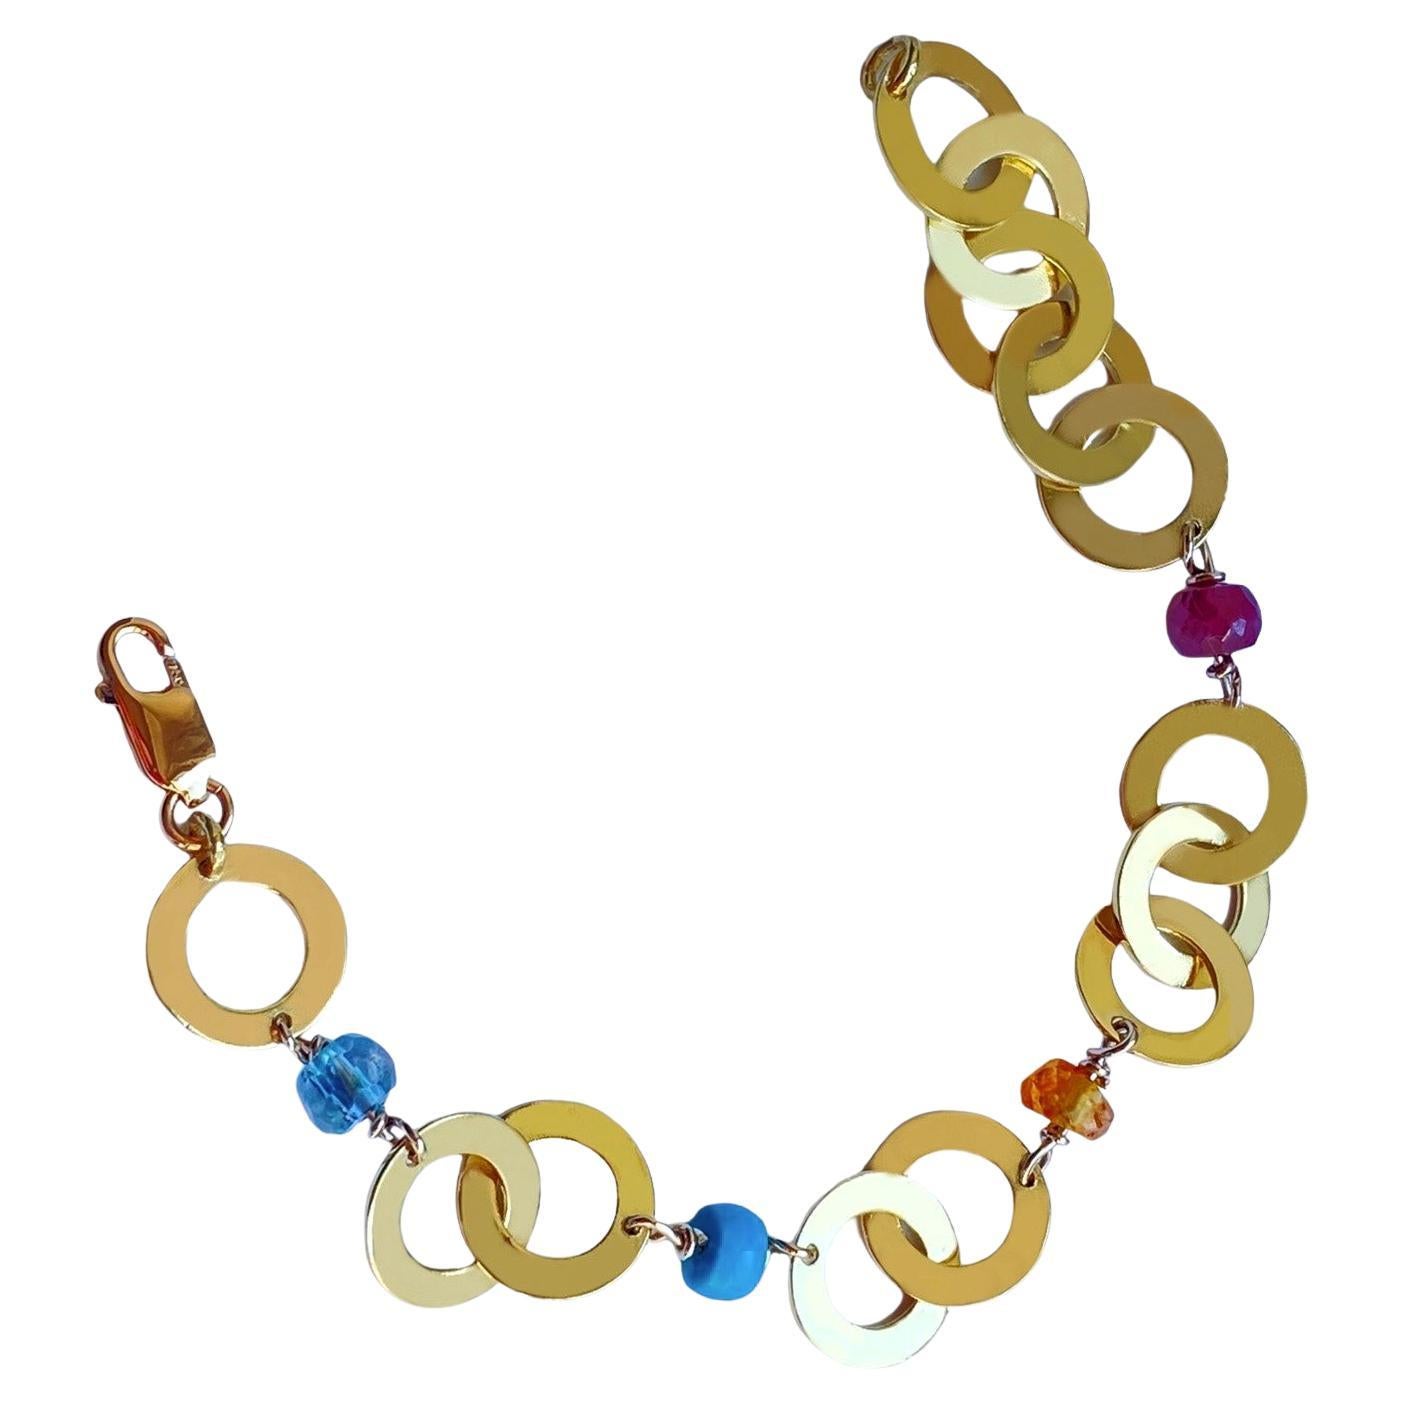 Bracelet en chaîne en or 18 carats, fabriqué à la main, avec des pierres précieuses futuristes Longueur personnalisable